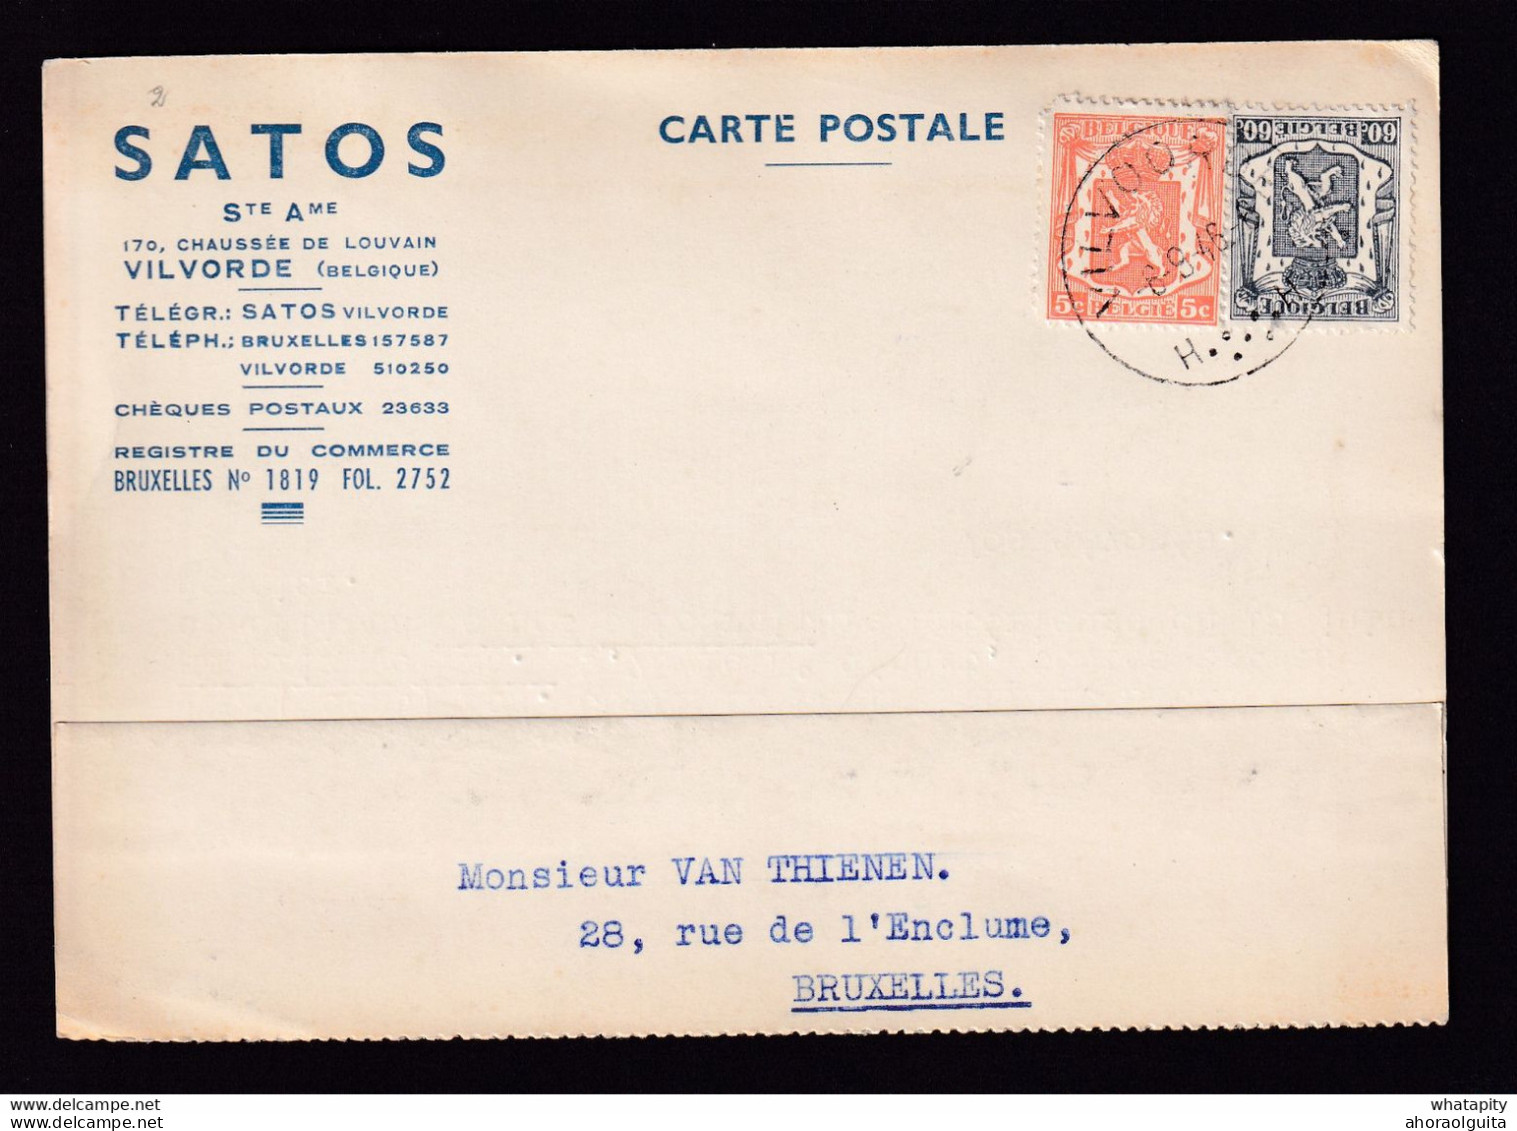 DDBB 010 - Carte Privée TP Petit Sceau VILVOORDE 1946 - Entete SATOS S.A. - Vente De Colle De Lapin - 1935-1949 Small Seal Of The State